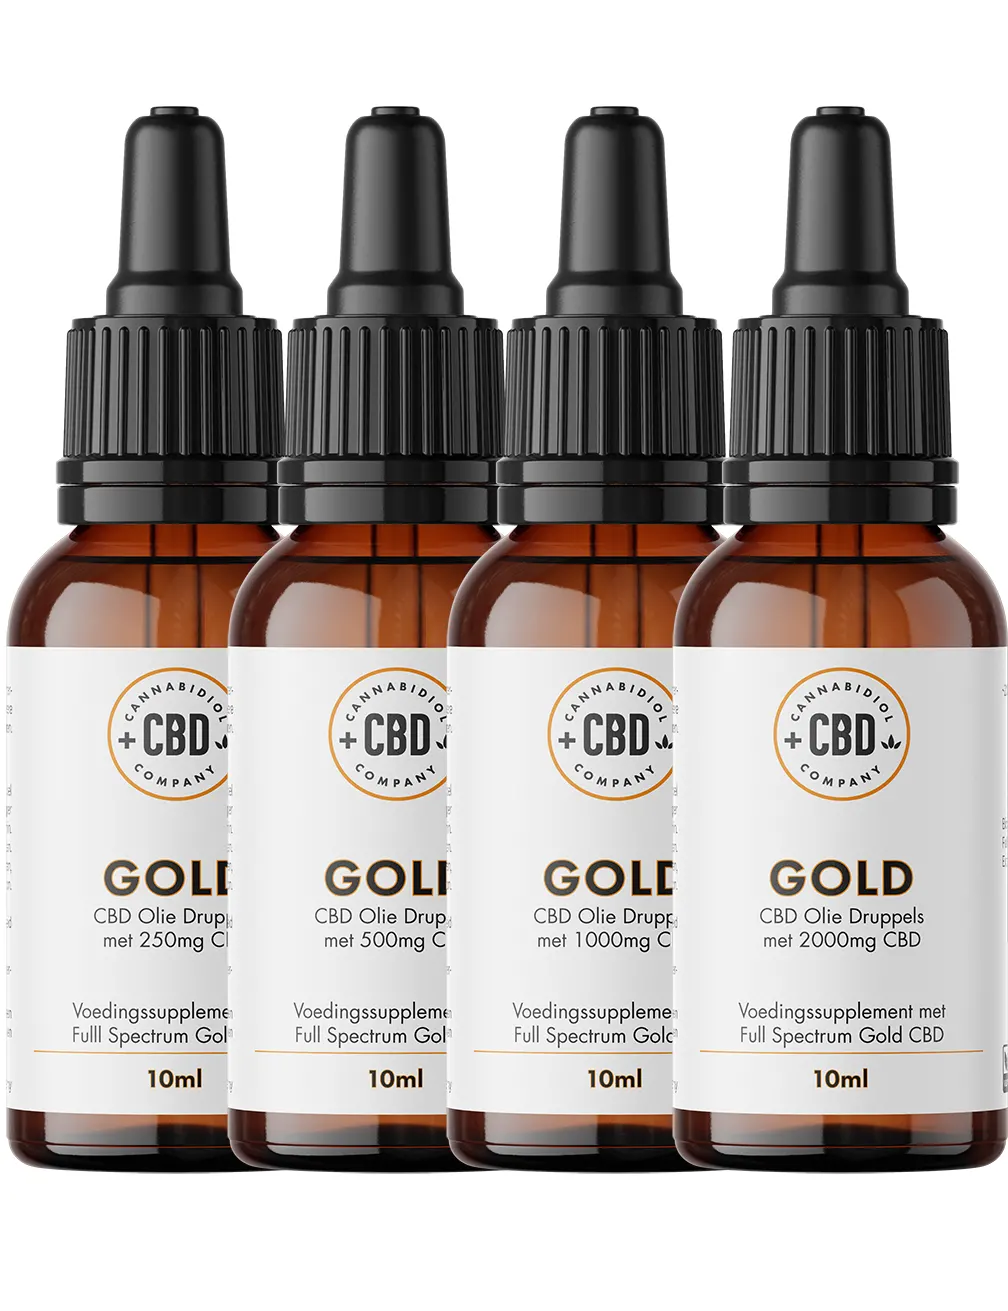 Gold CBD Olie, Full Spectrum CBD olie